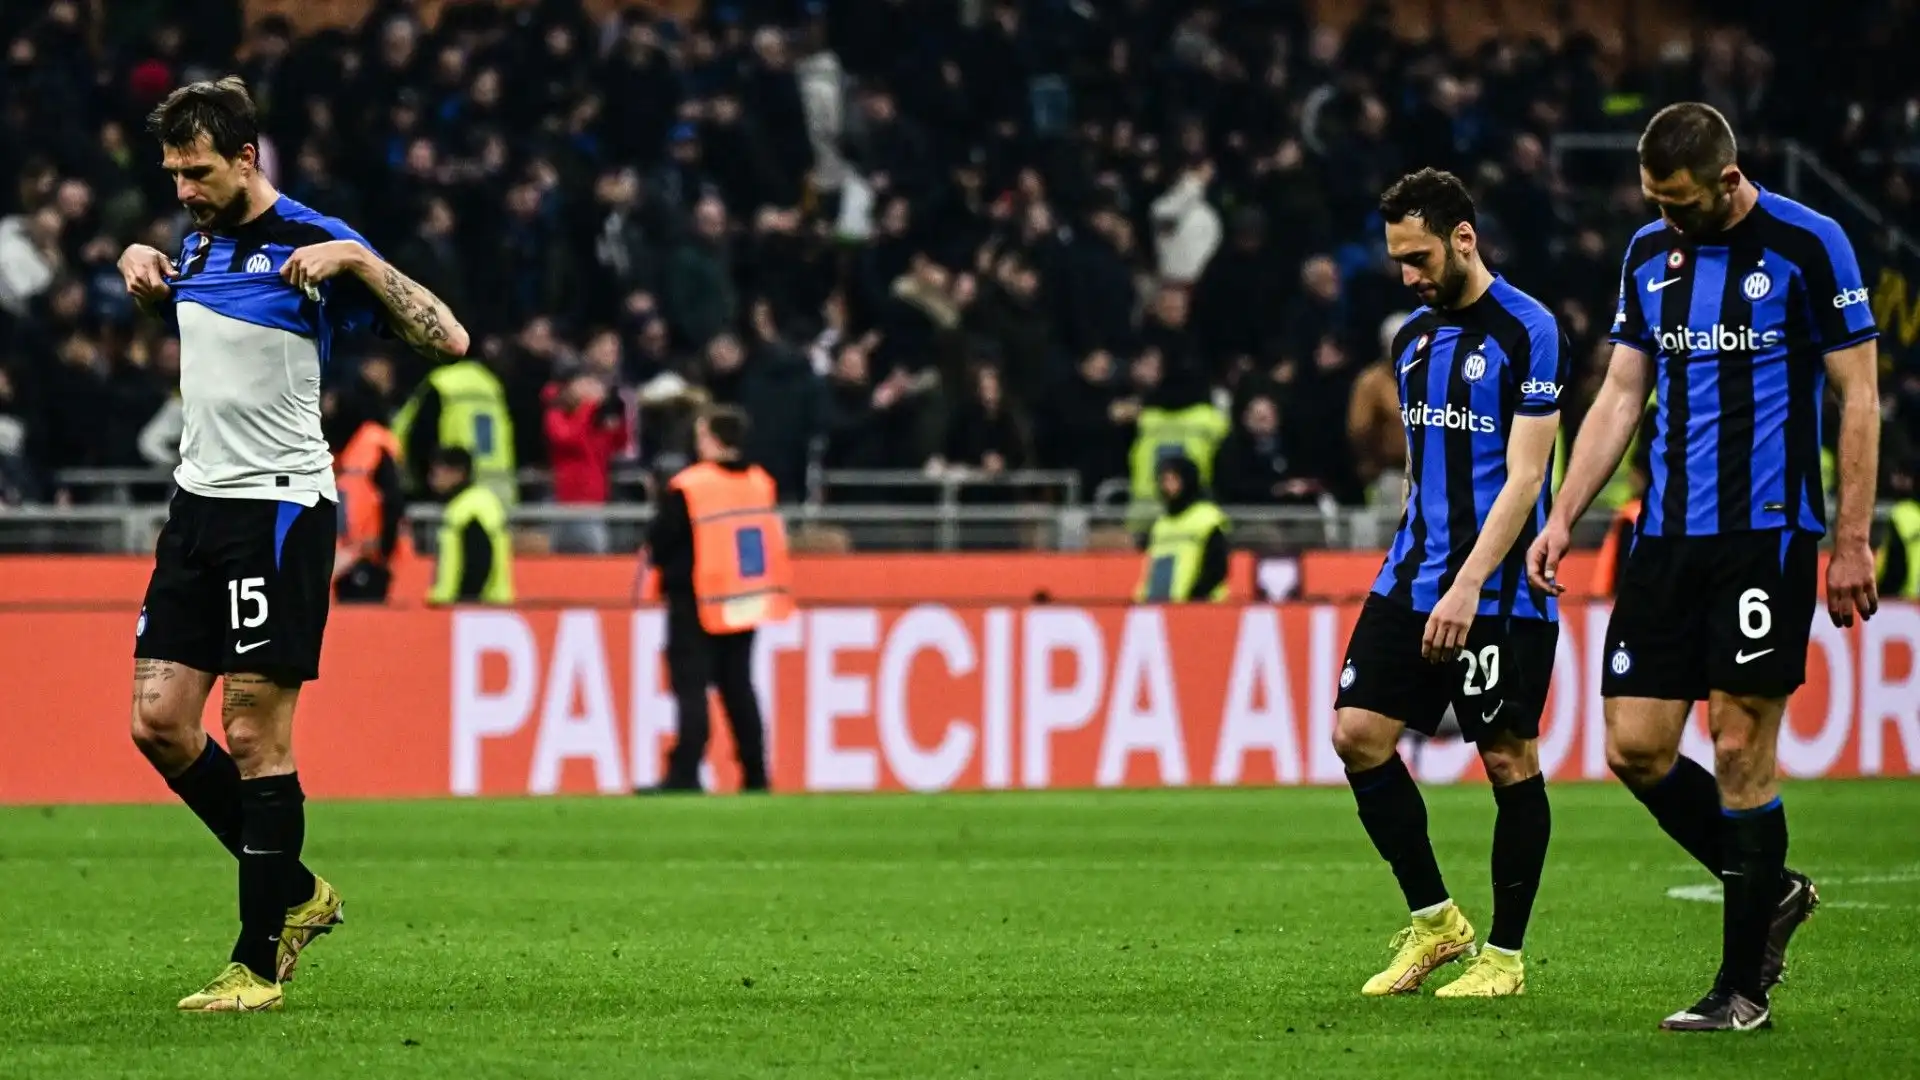 E' la sconfitta numero 9 nella stagione dell'Inter